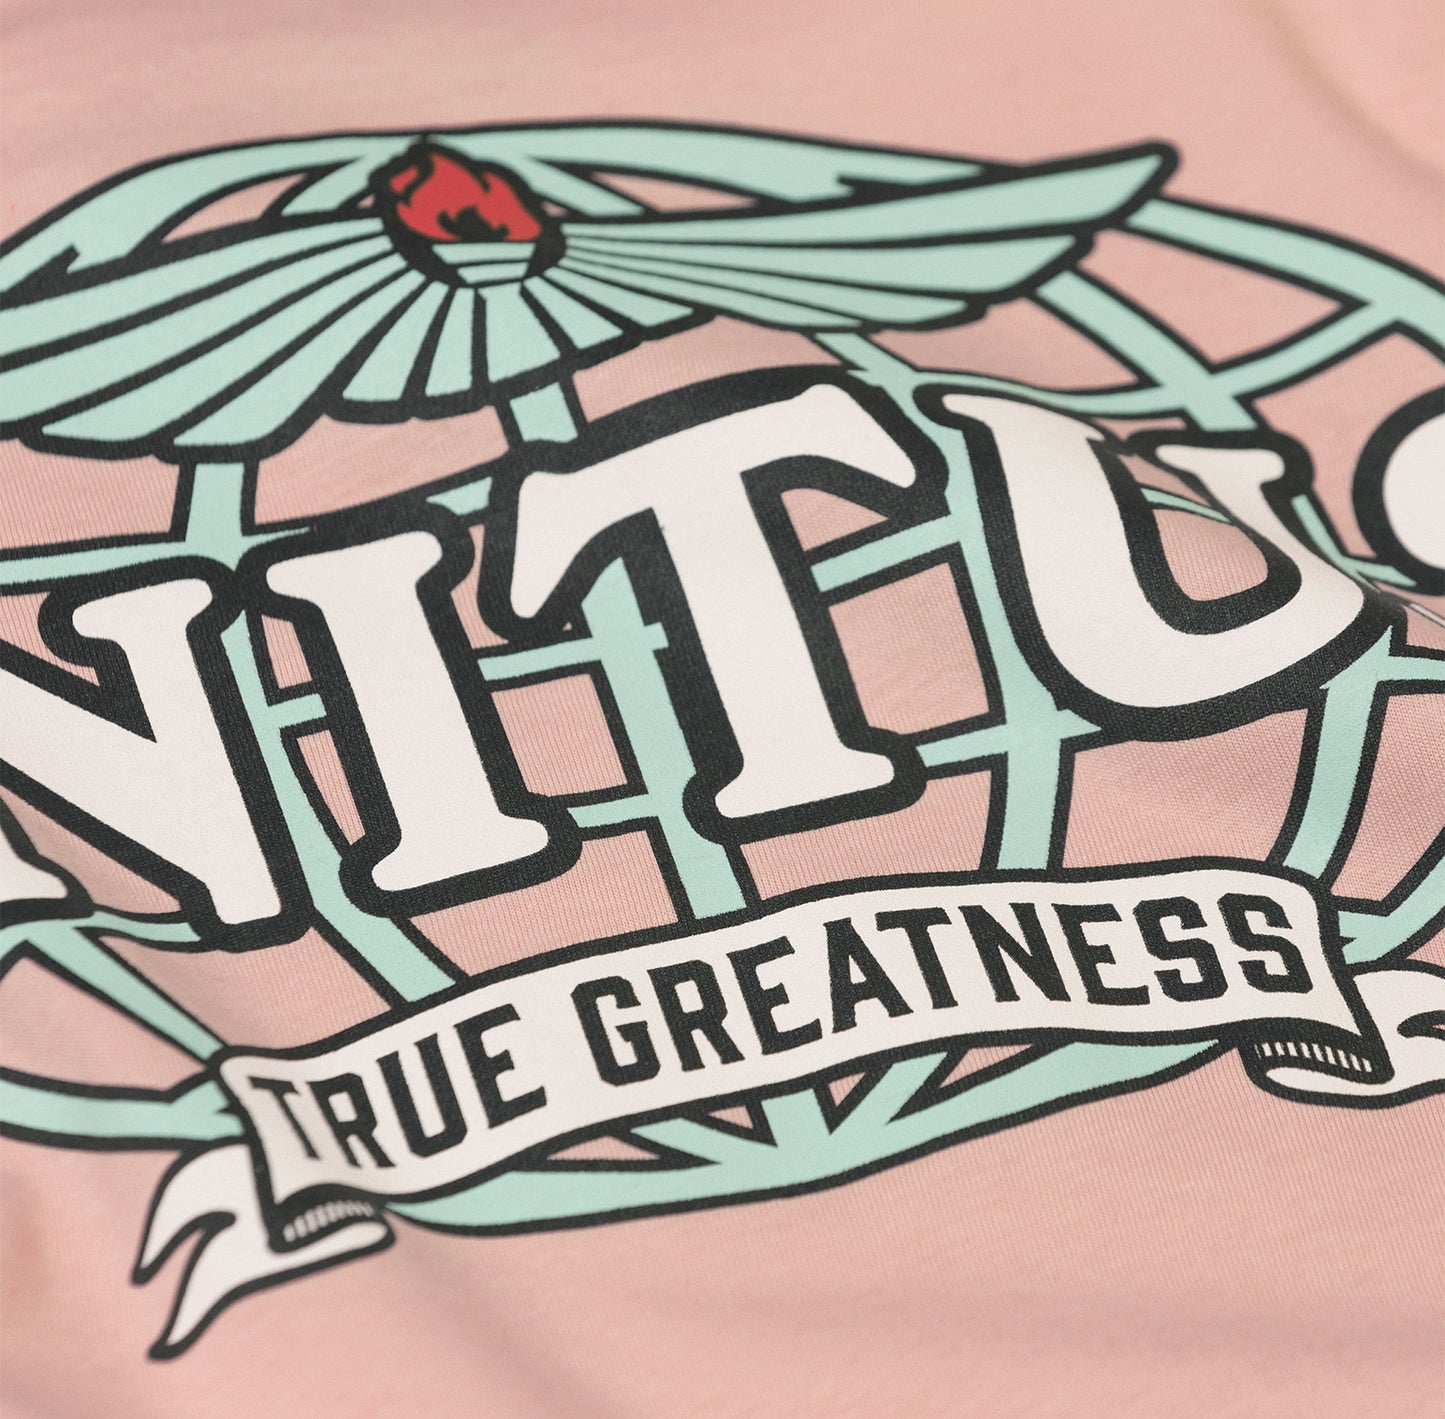 UNITUS Staple Premium T-Shirt- Pink